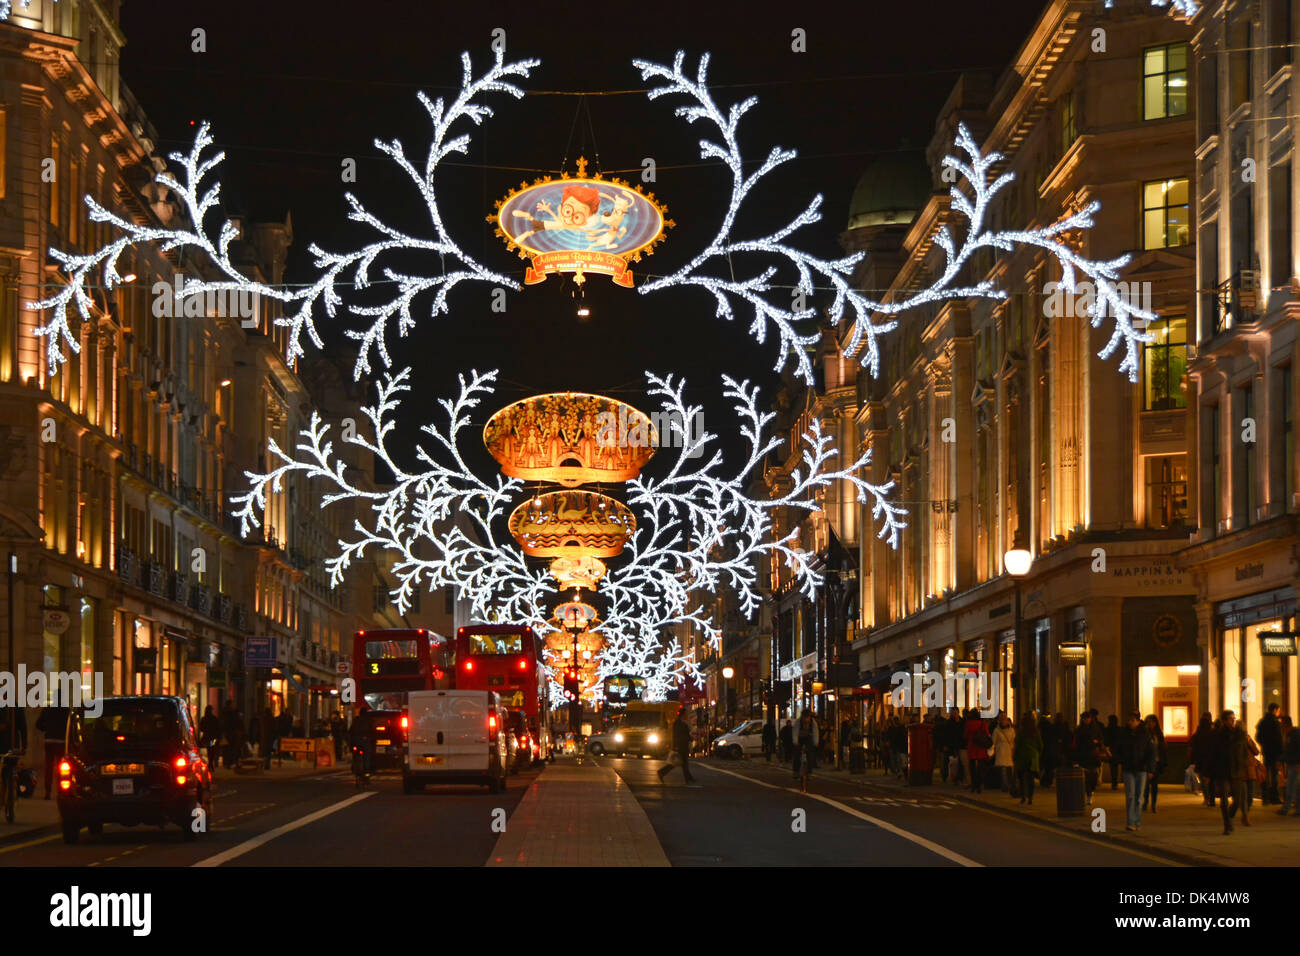 Nuit soirée hiver scène de rue et circulation routière à Regent Rue illuminations et décorations de Noël annuelles West End Londres Angleterre ROYAUME-UNI Banque D'Images